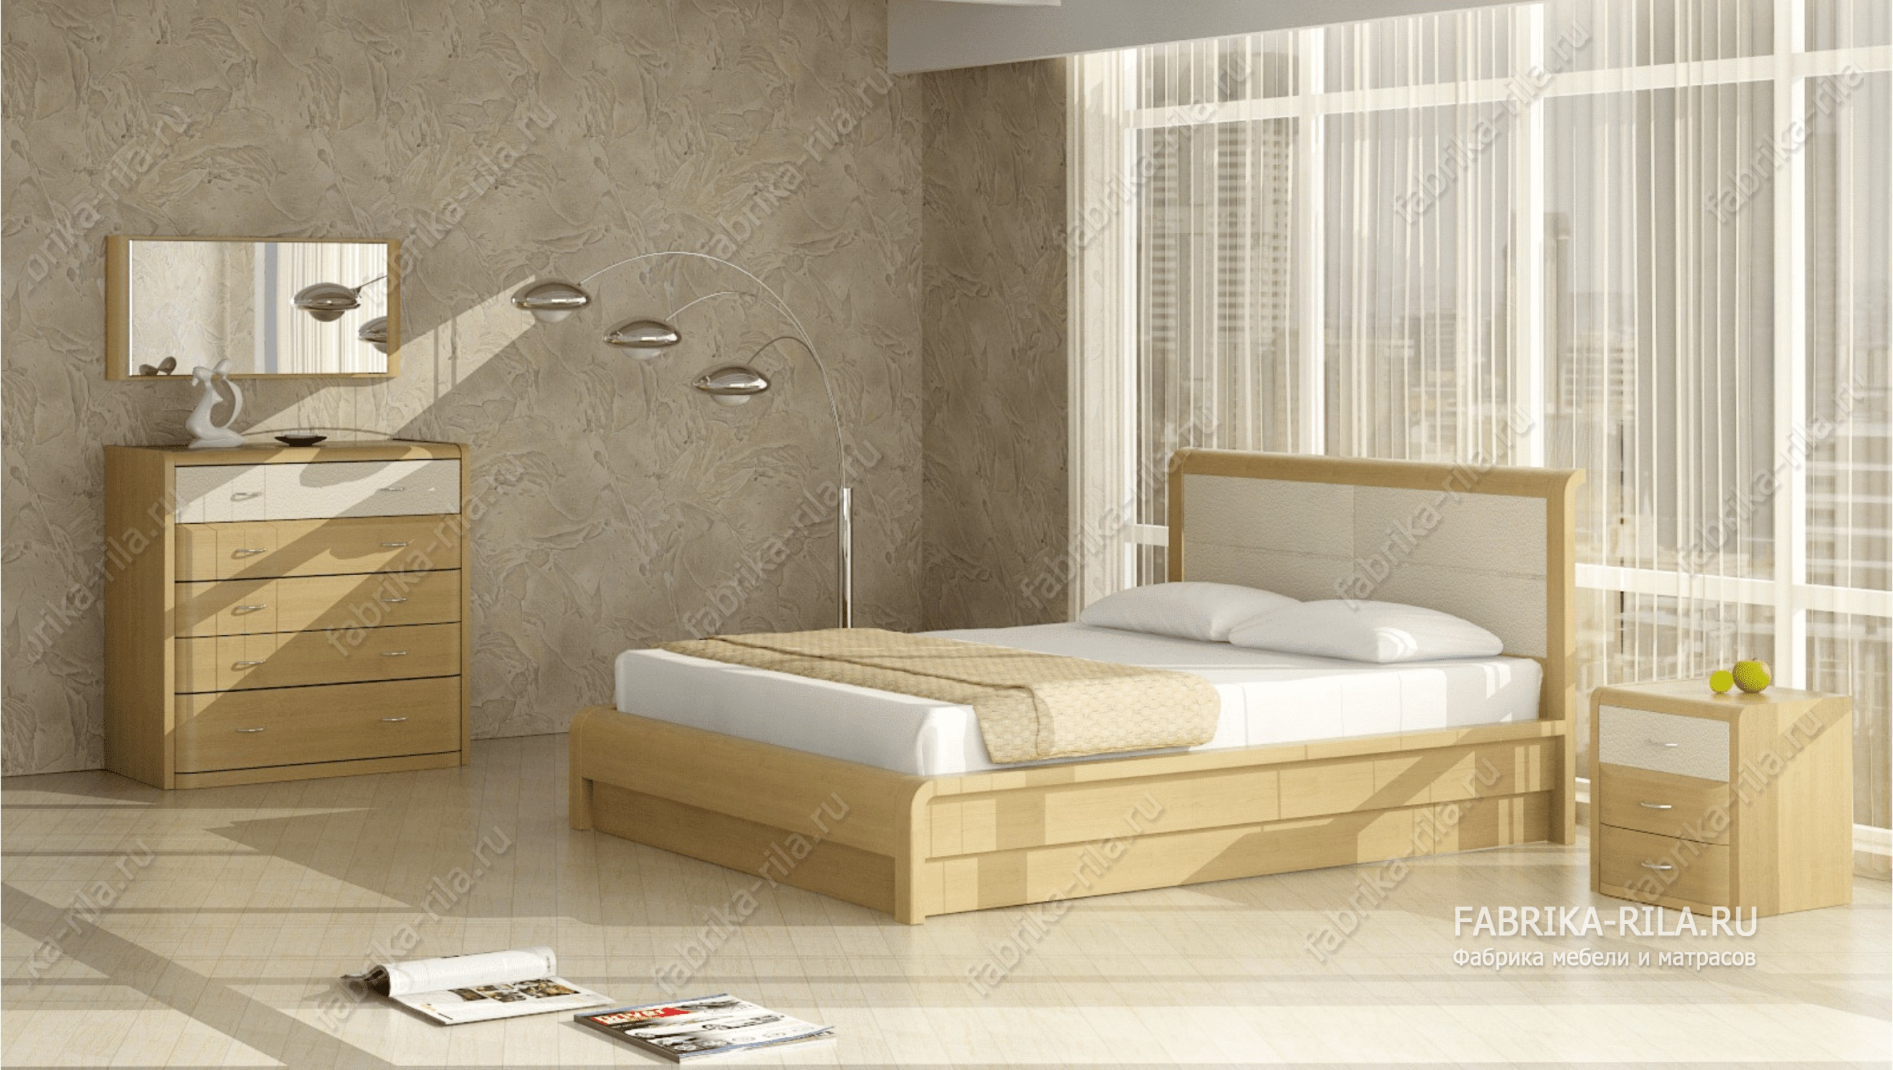 Кровать Arikama 1 — 90x190 см. из дуба